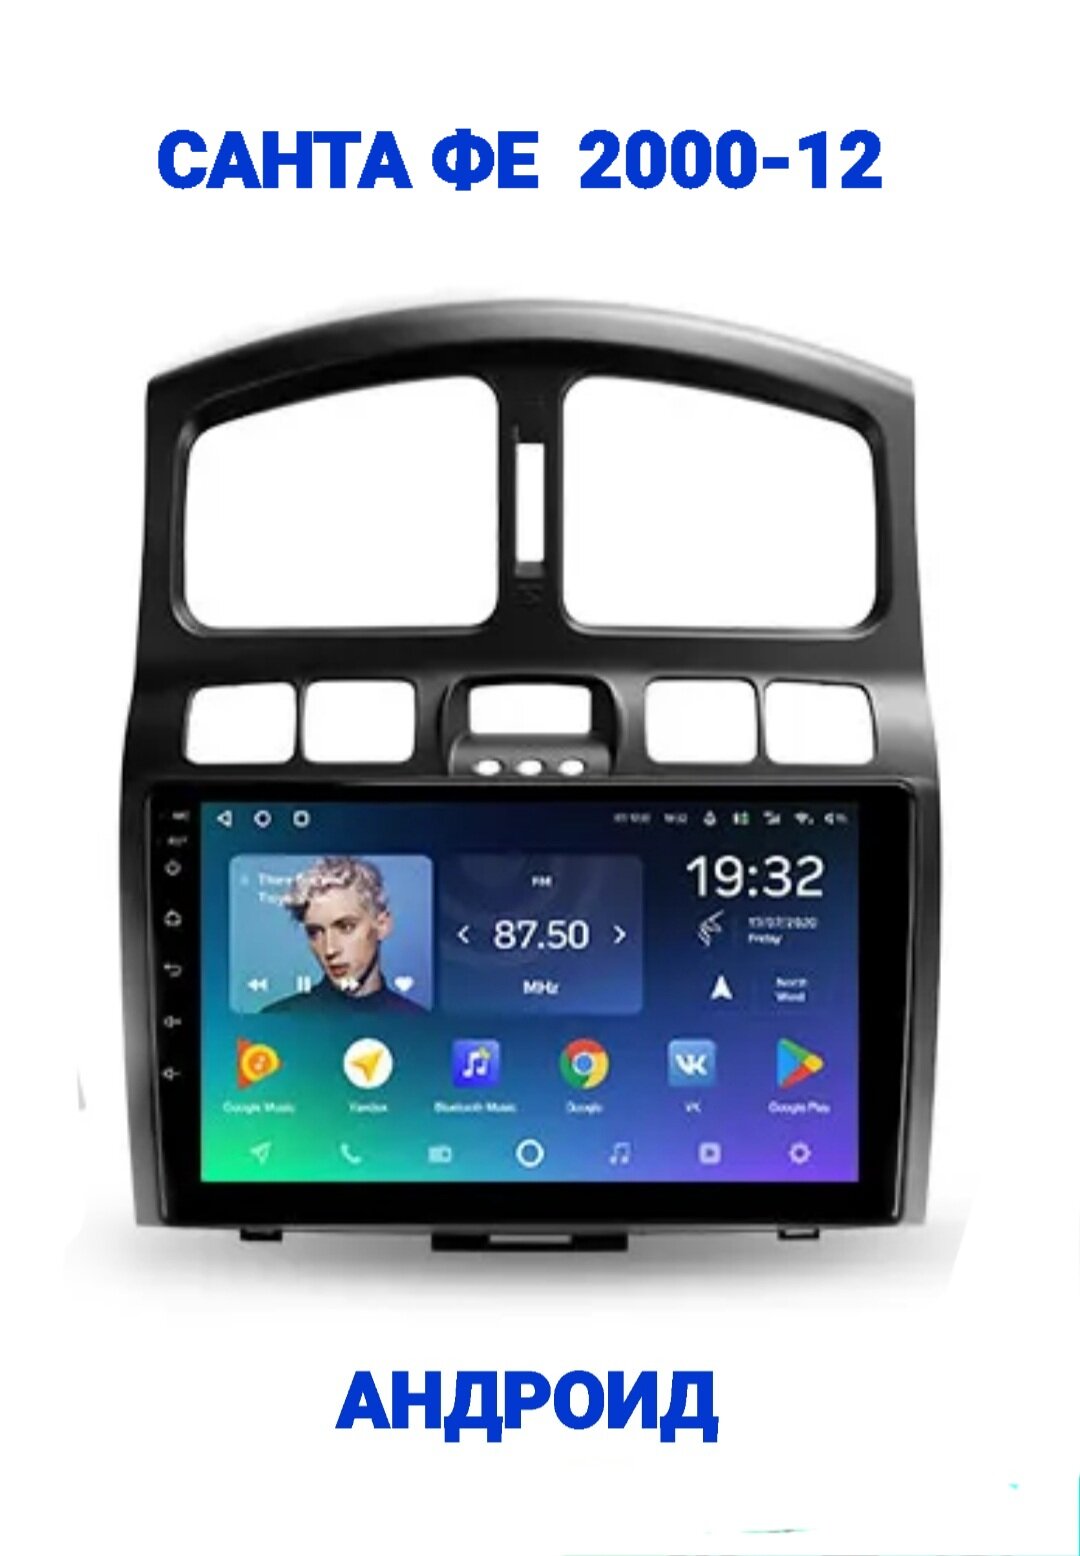 Магнитола андроид 13, WiFi, GPS, USB, Блютуз, для Хёндэ Санта Фе (Hyundai Santa Fe) 2000-2012г